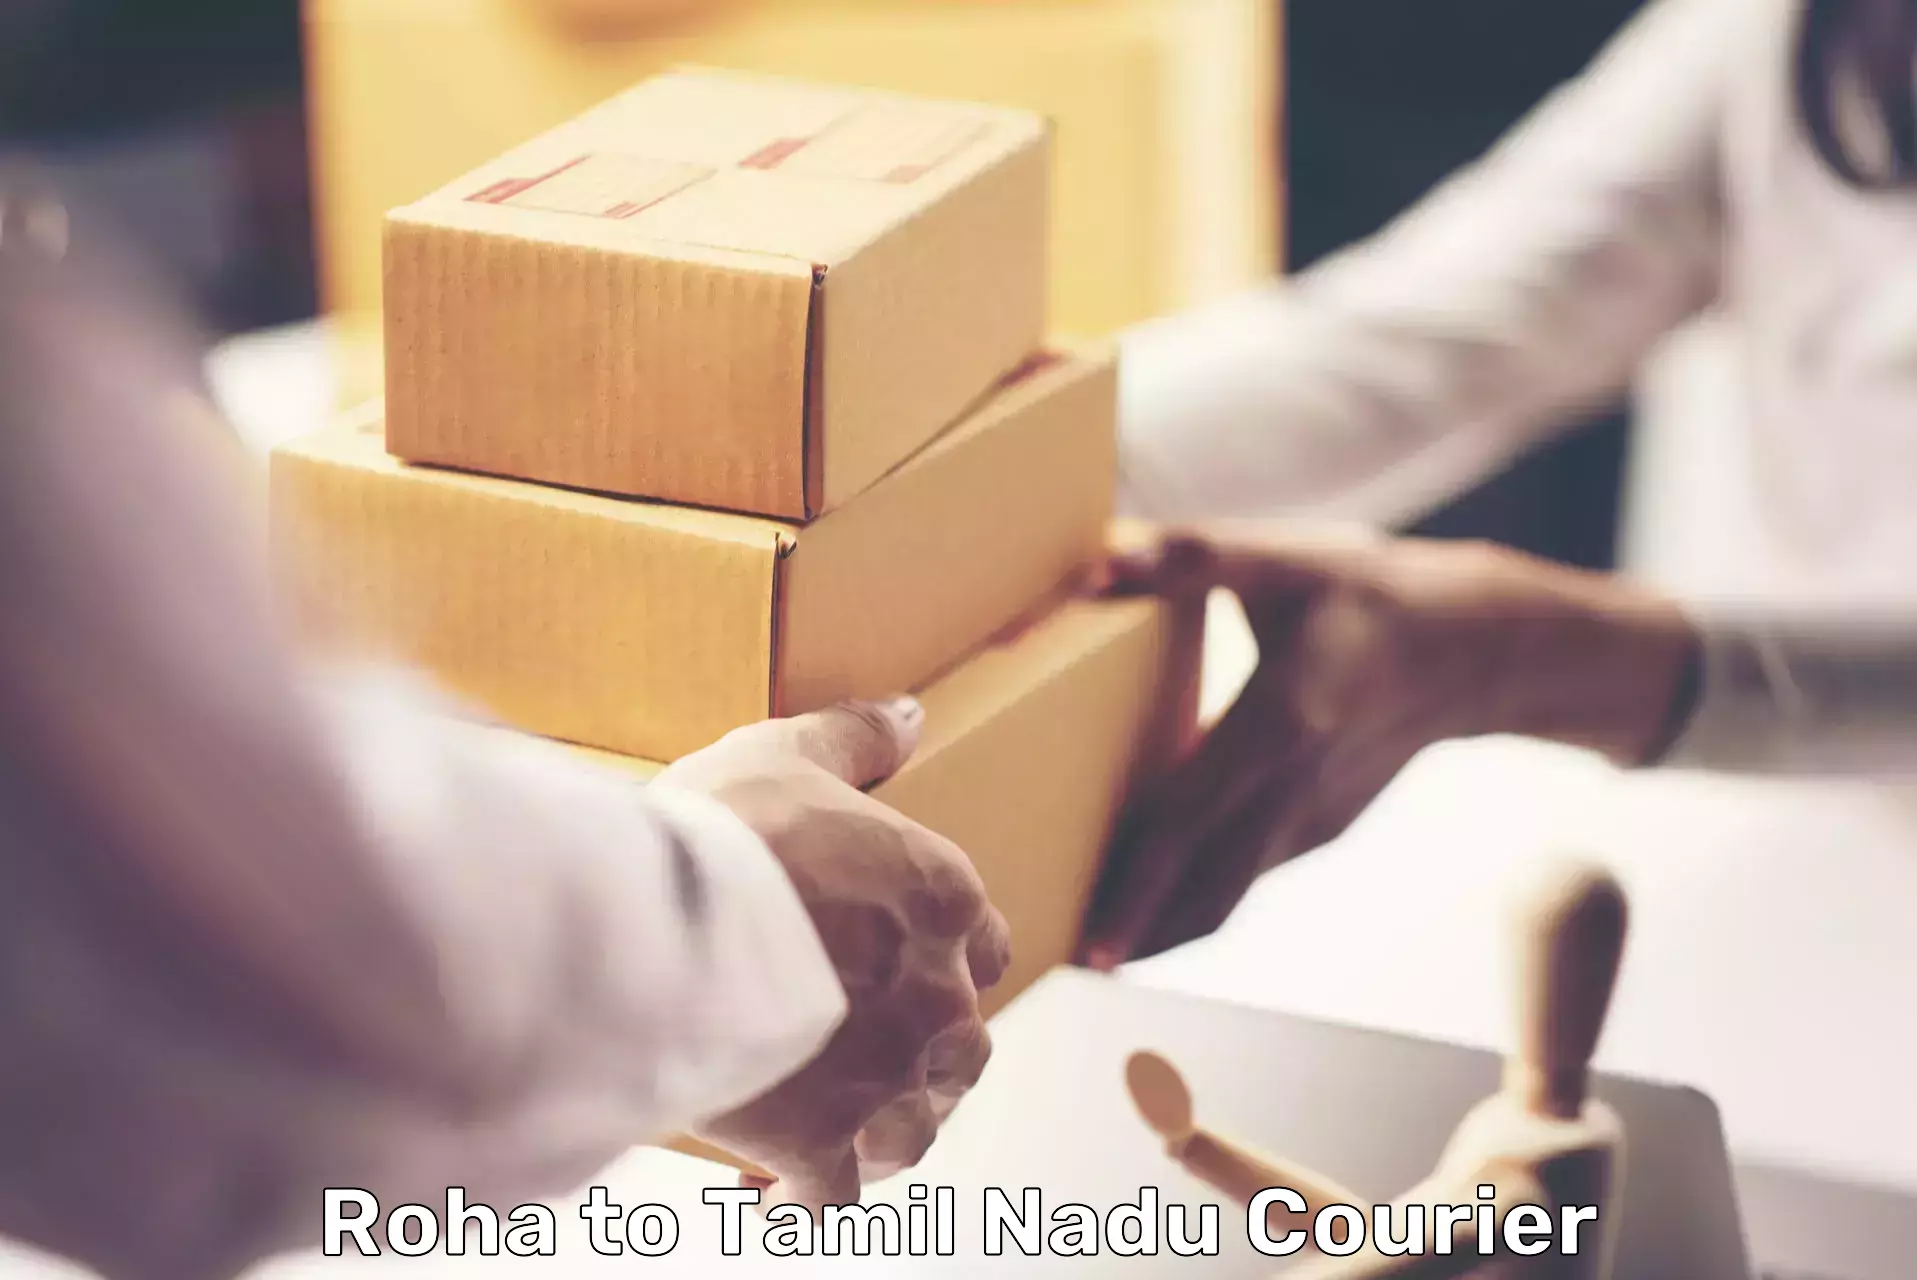 Global logistics network Roha to Gobichettipalayam